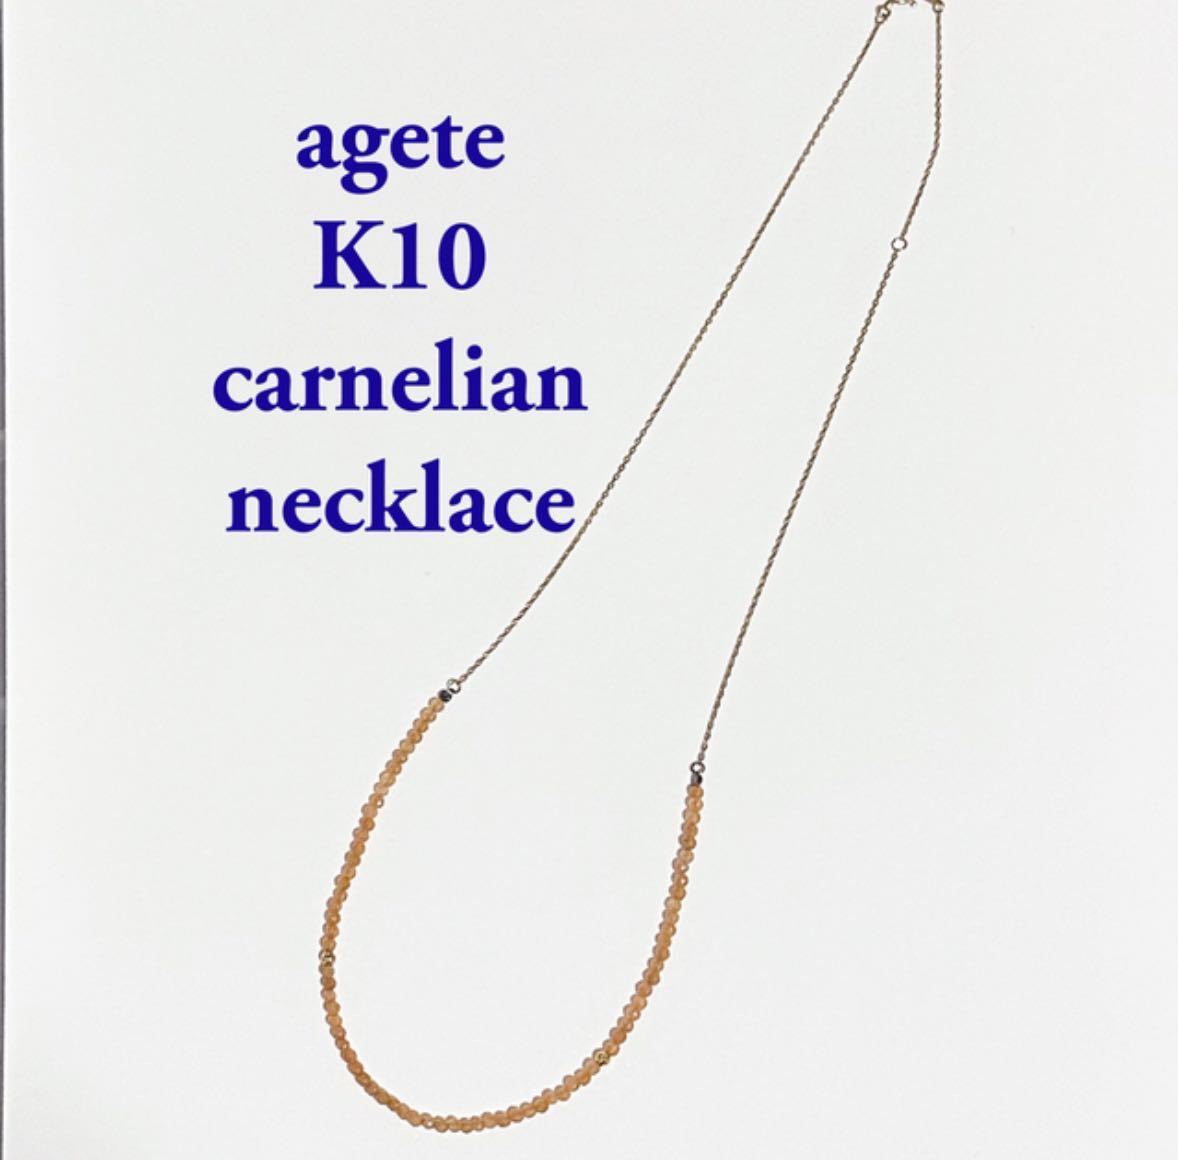 日本限定 ネックレス カーネリアン K10 agete チェーン 45cm ロング